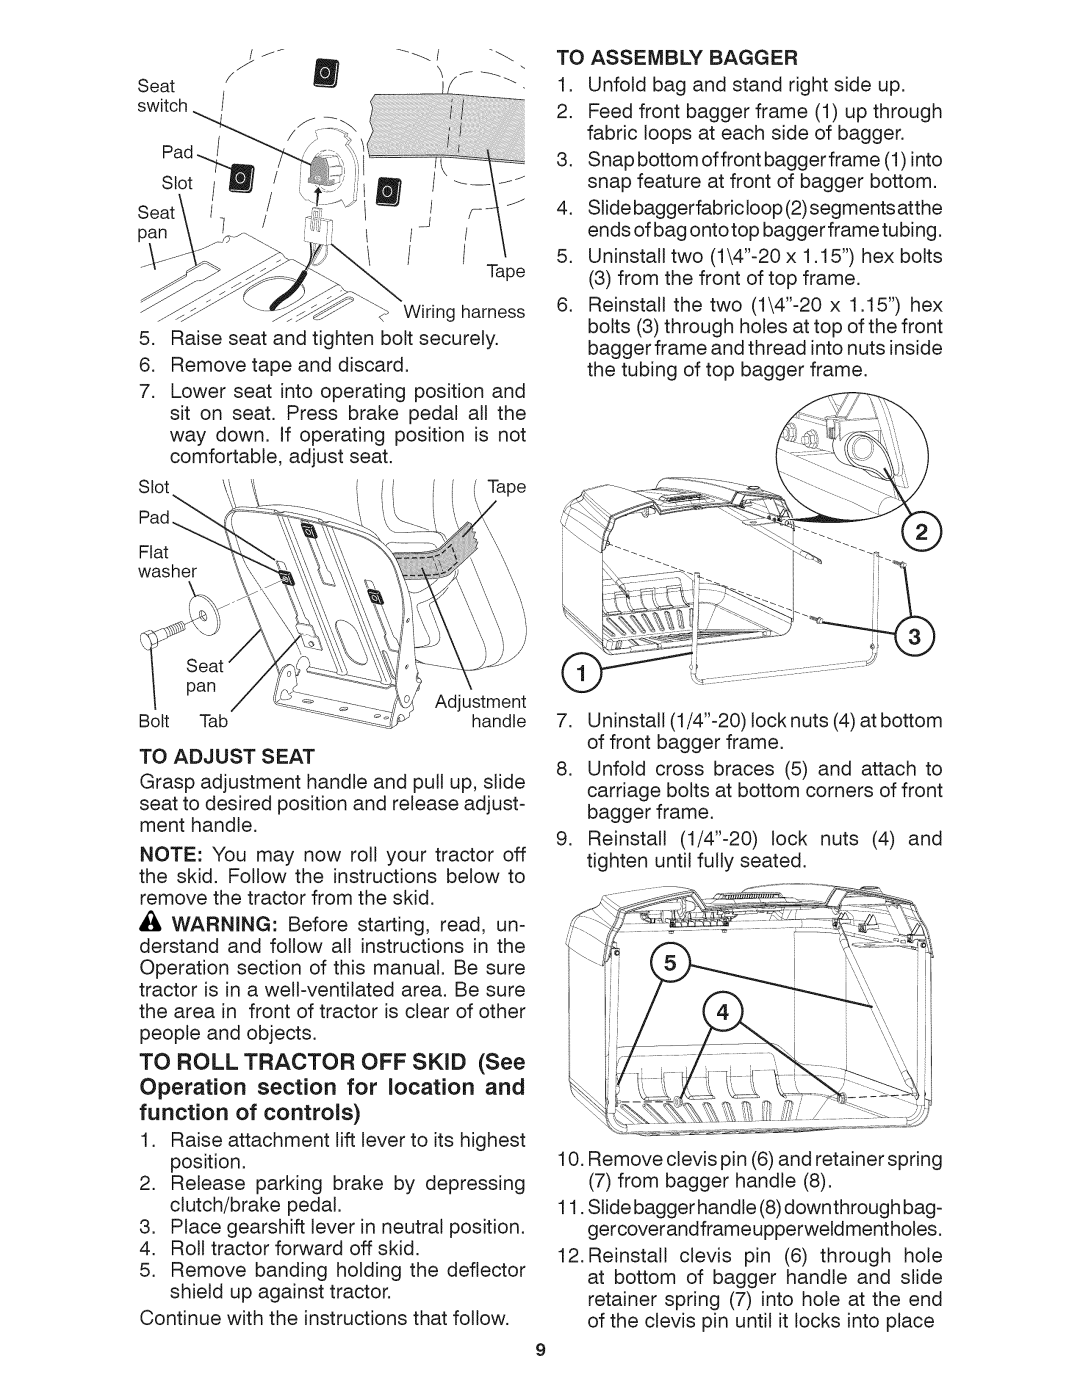 Craftsman 917.28035 owner manual pan Tape Wiring harness 